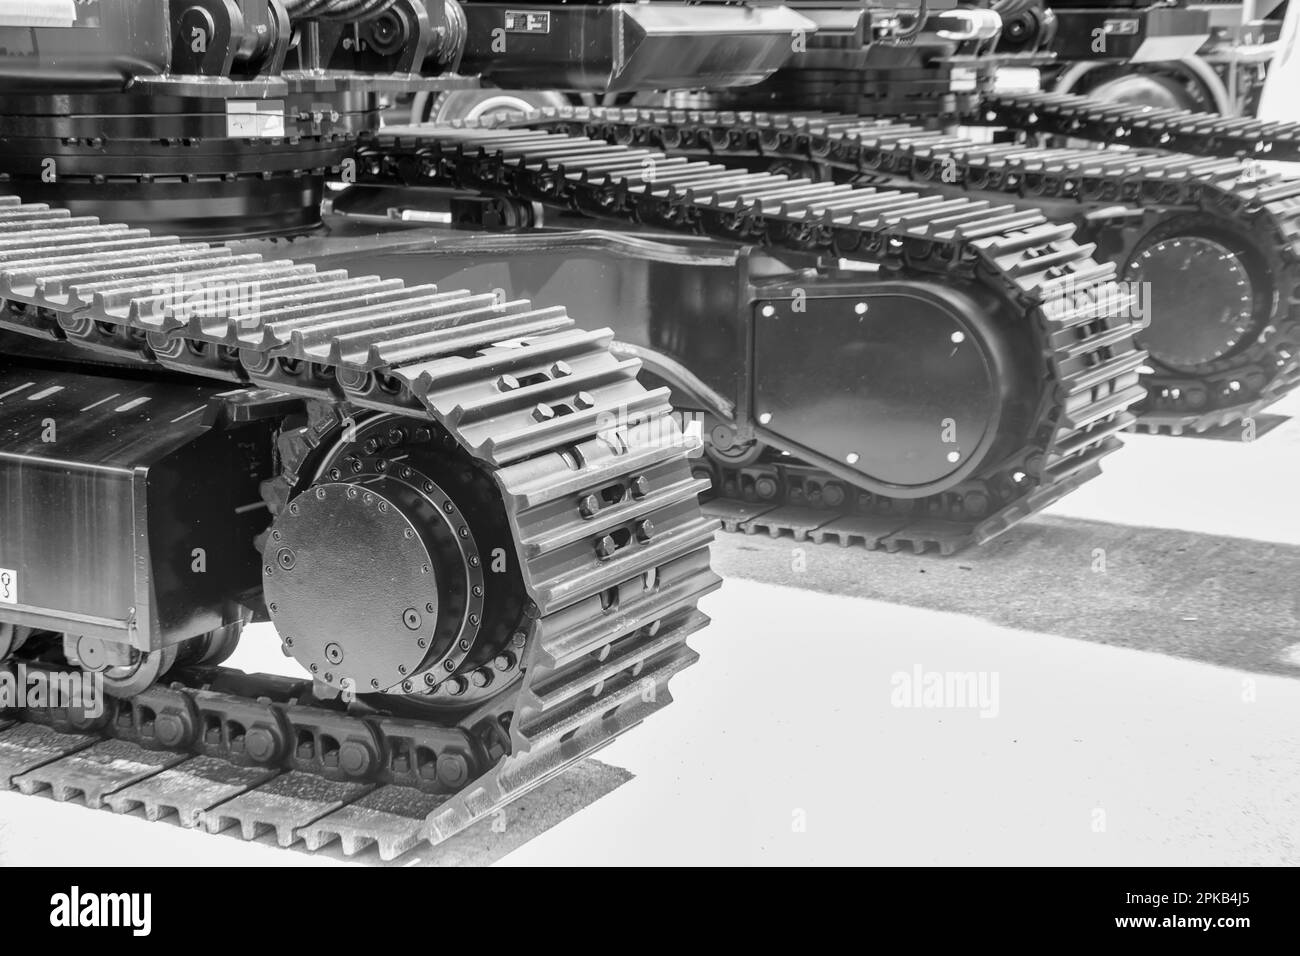 Caterpillar-Ketten in Schwarz-Weiß, Fahrwerk einer schweren Baumaschine. Stockfoto